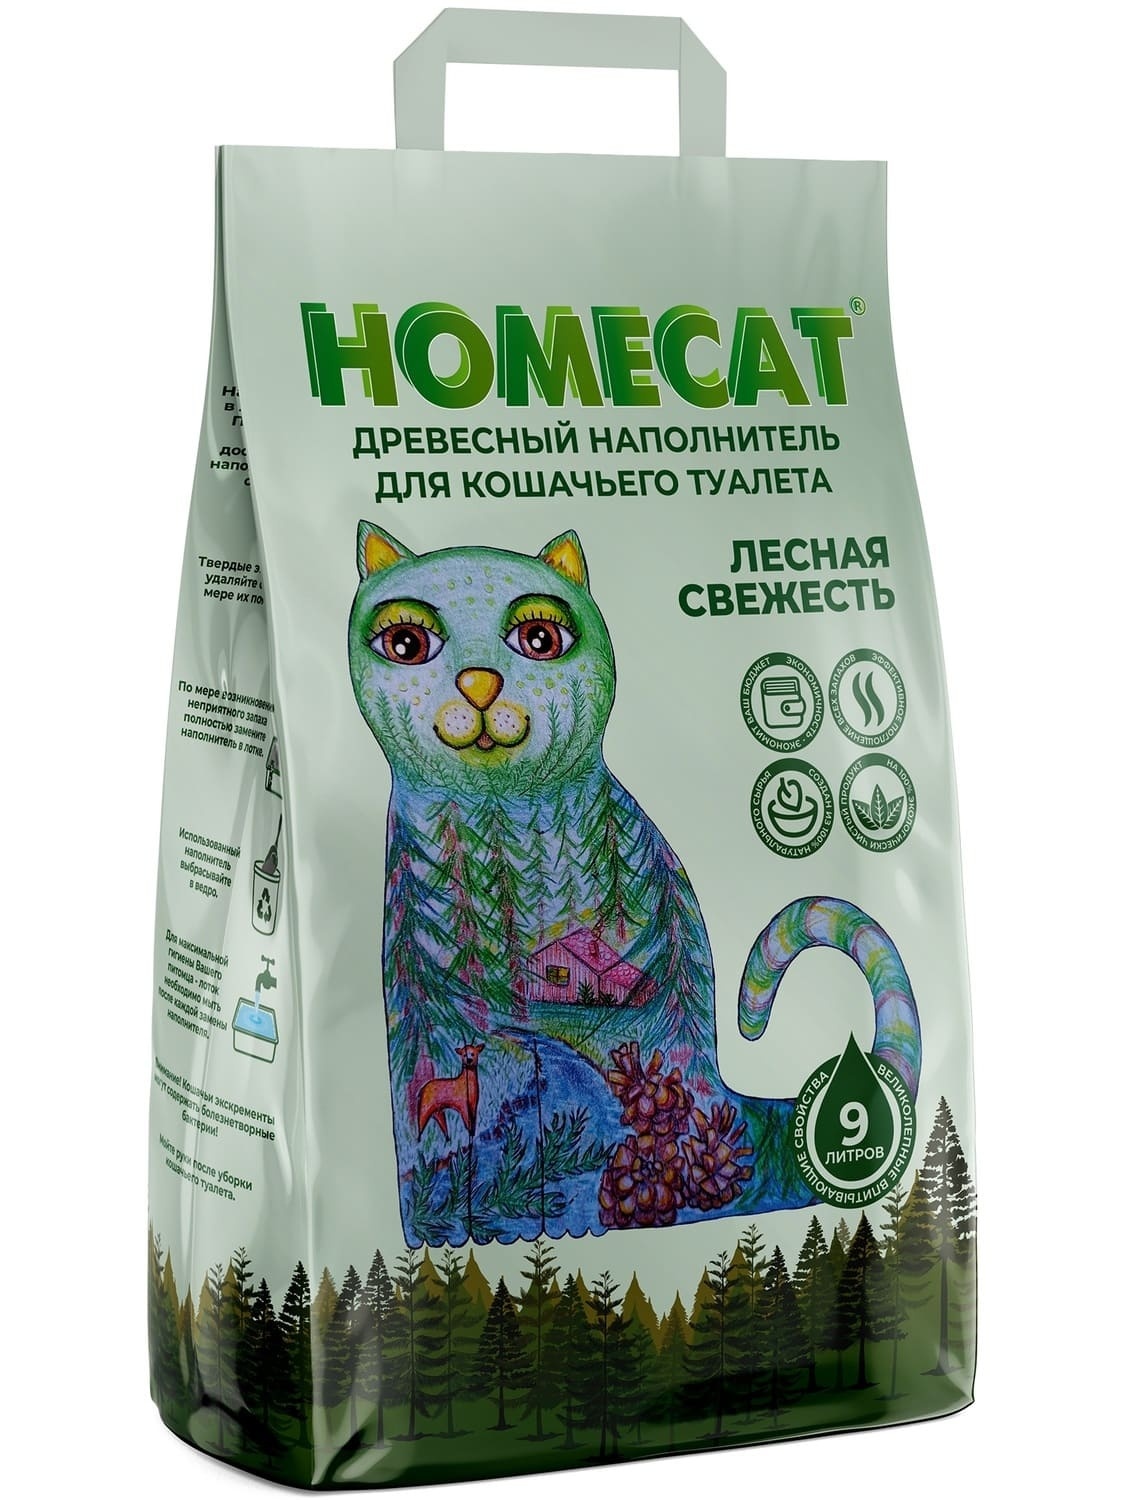 Homecat наполнитель Homecat наполнитель древесный наполнитель, мелкие гранулы (5,3 кг)